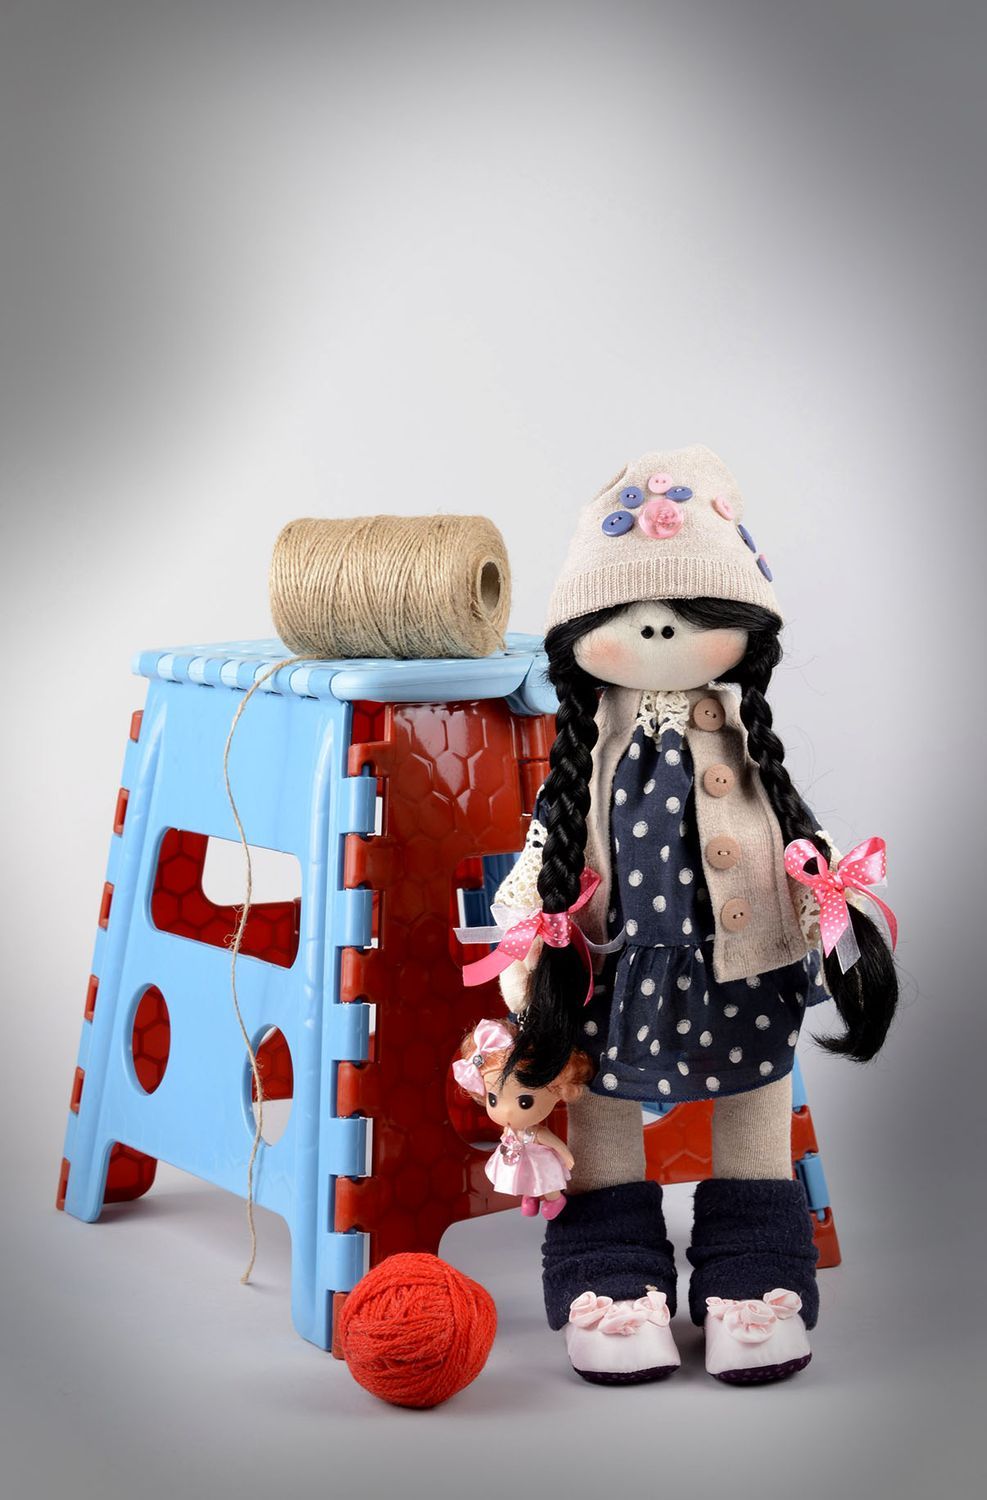 Handmade soft doll girl doll toys for kids nursery decor gifts for children photo 5